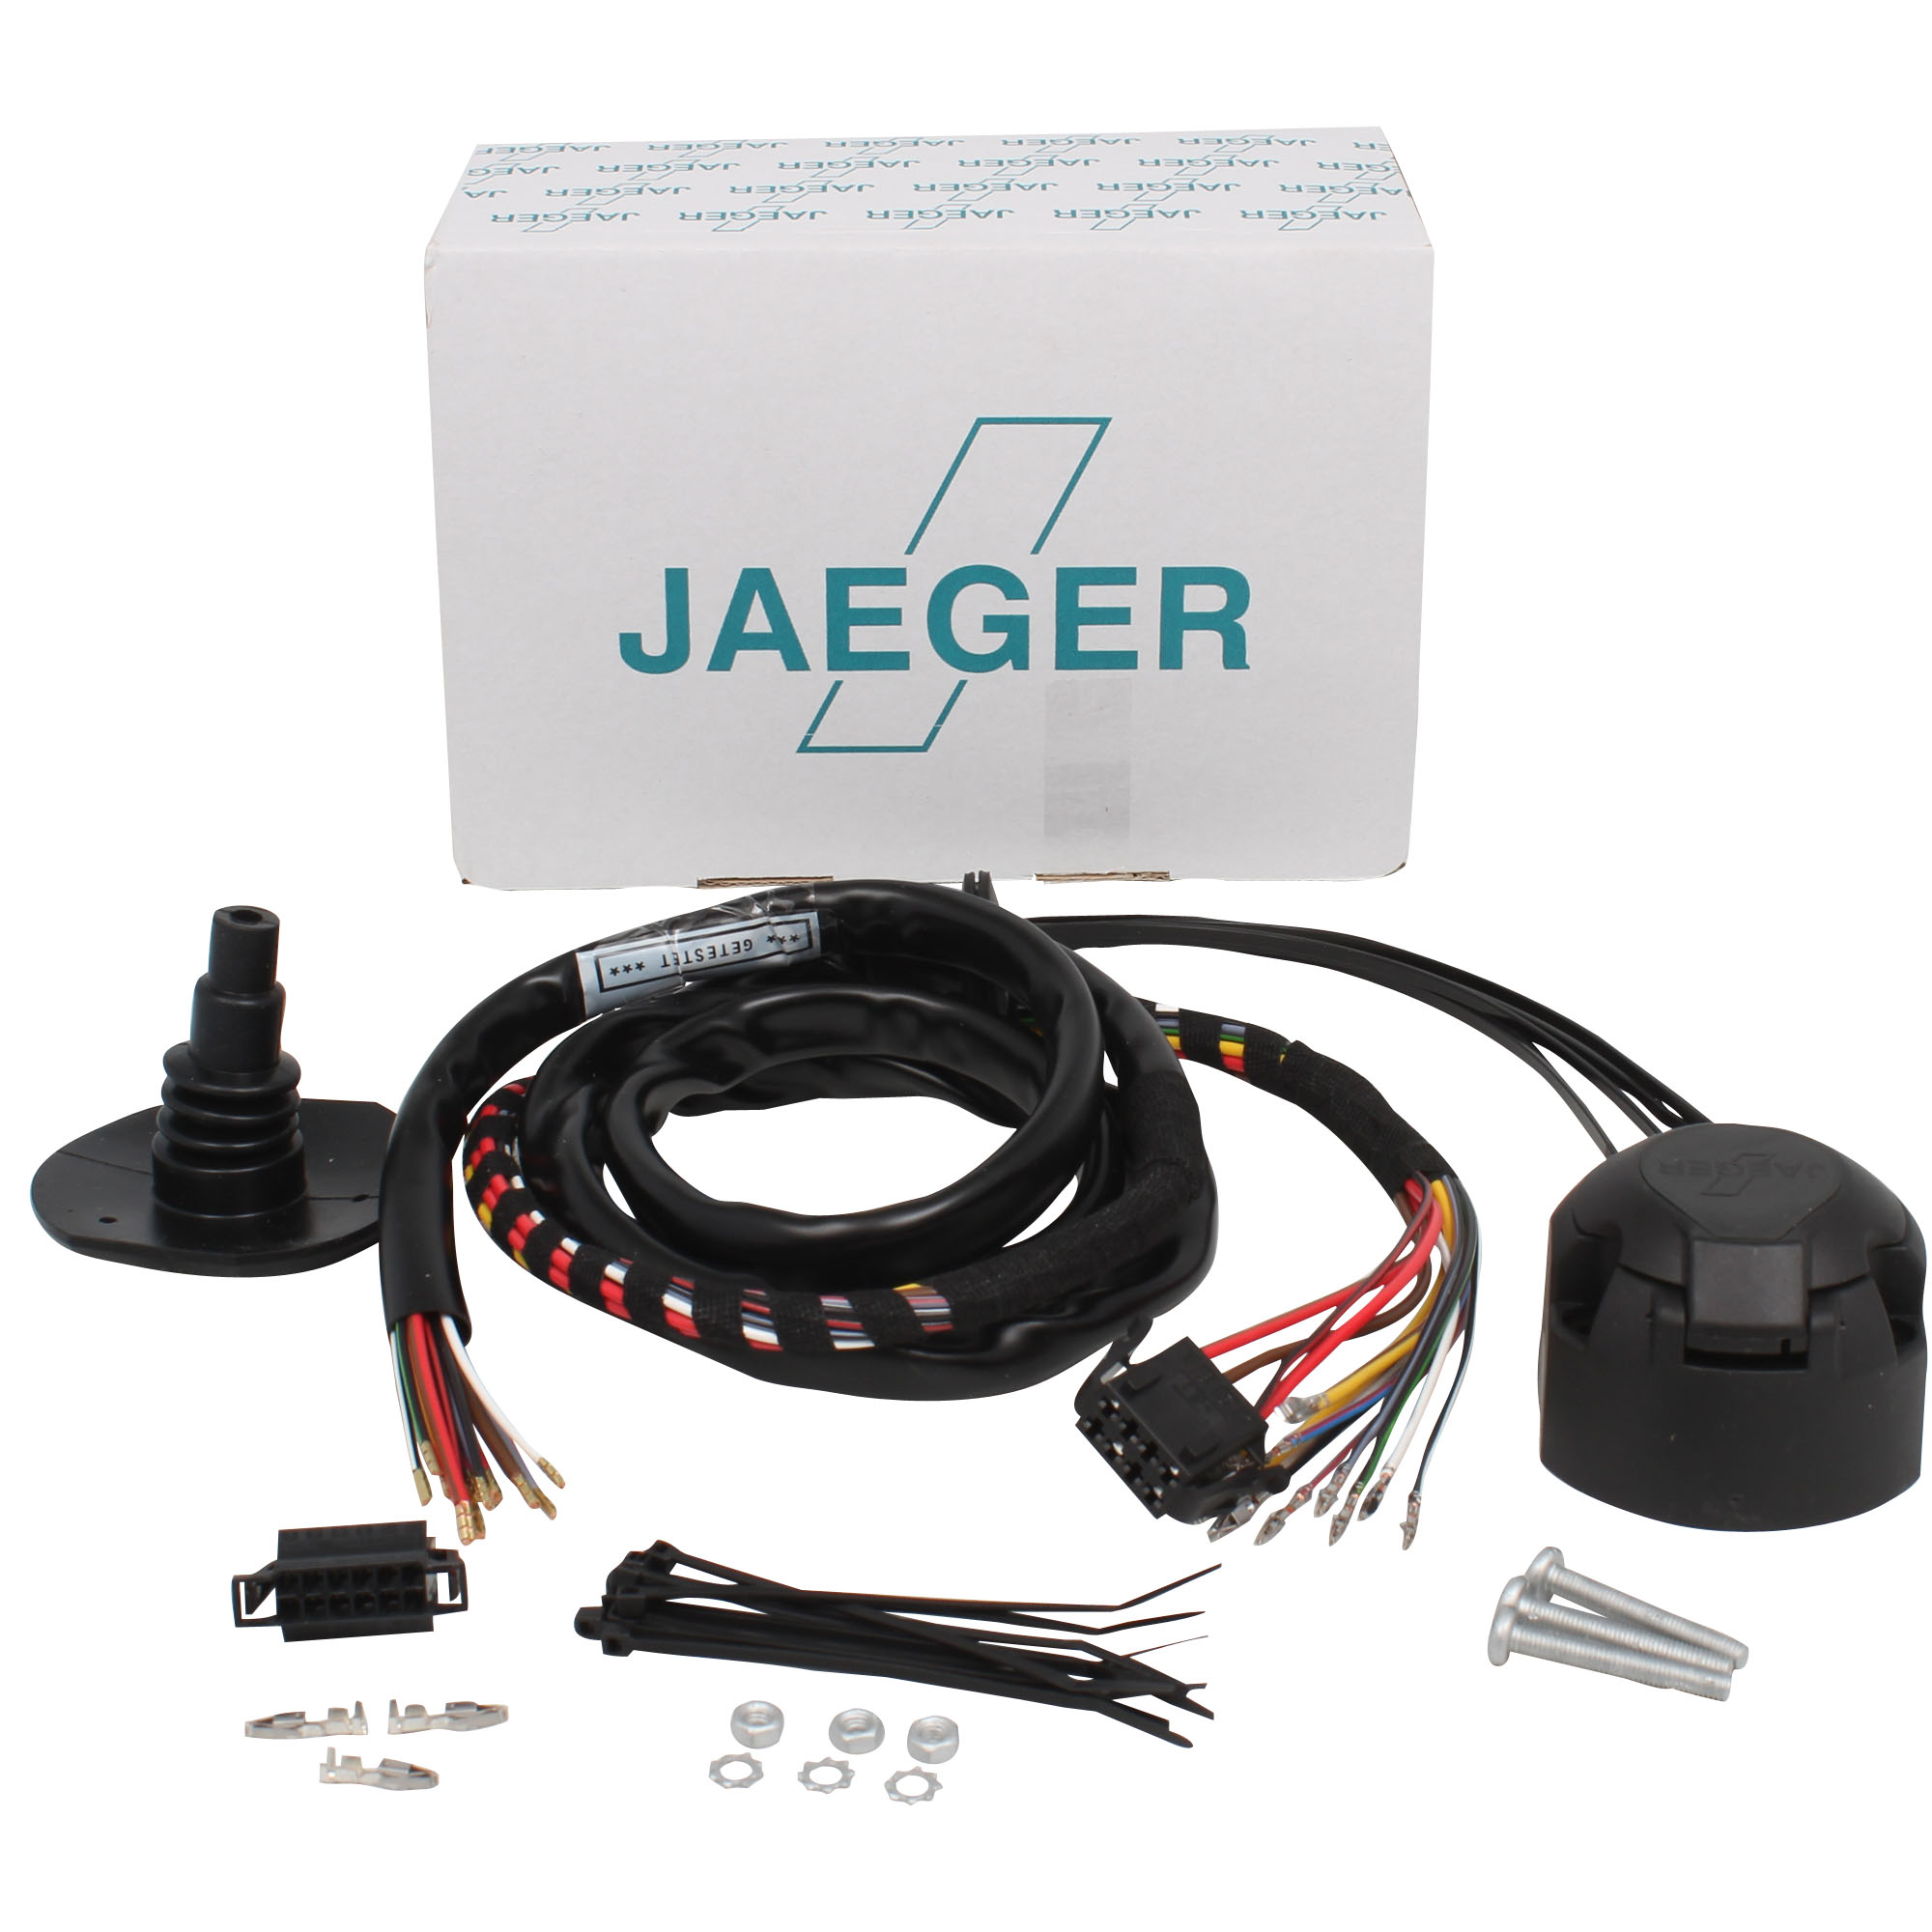 Jaeger kabelset trekhaak Mercedes gle W164 w166